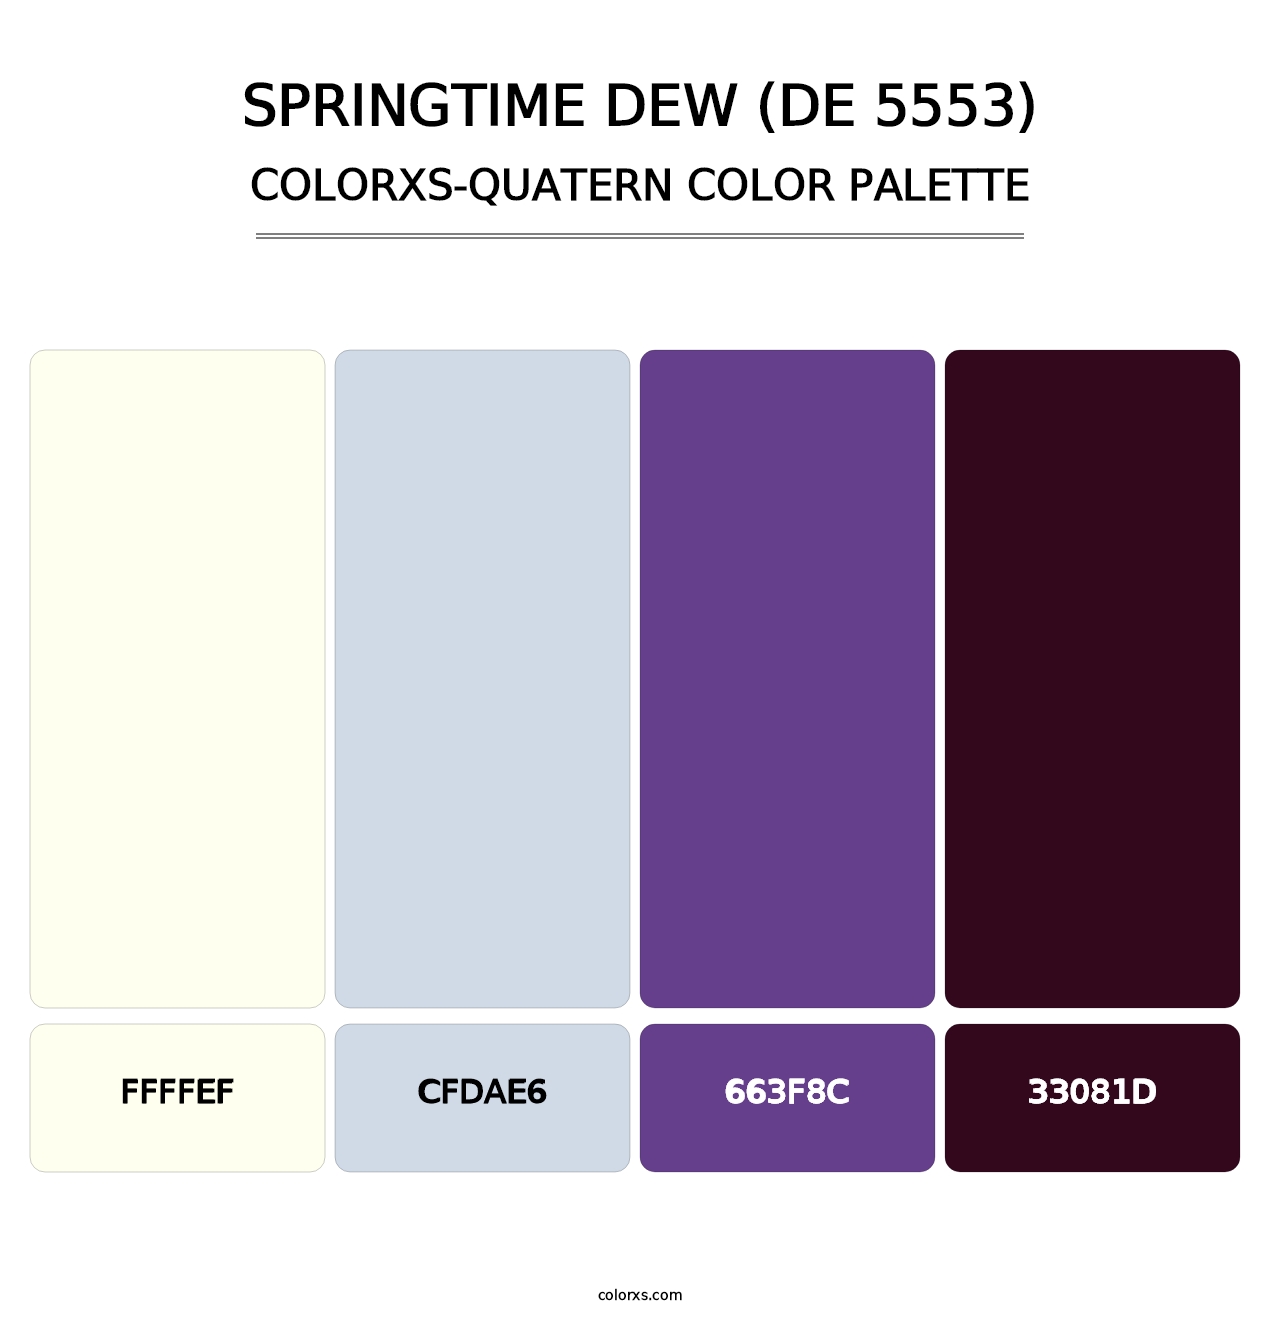 Springtime Dew (DE 5553) - Colorxs Quatern Palette